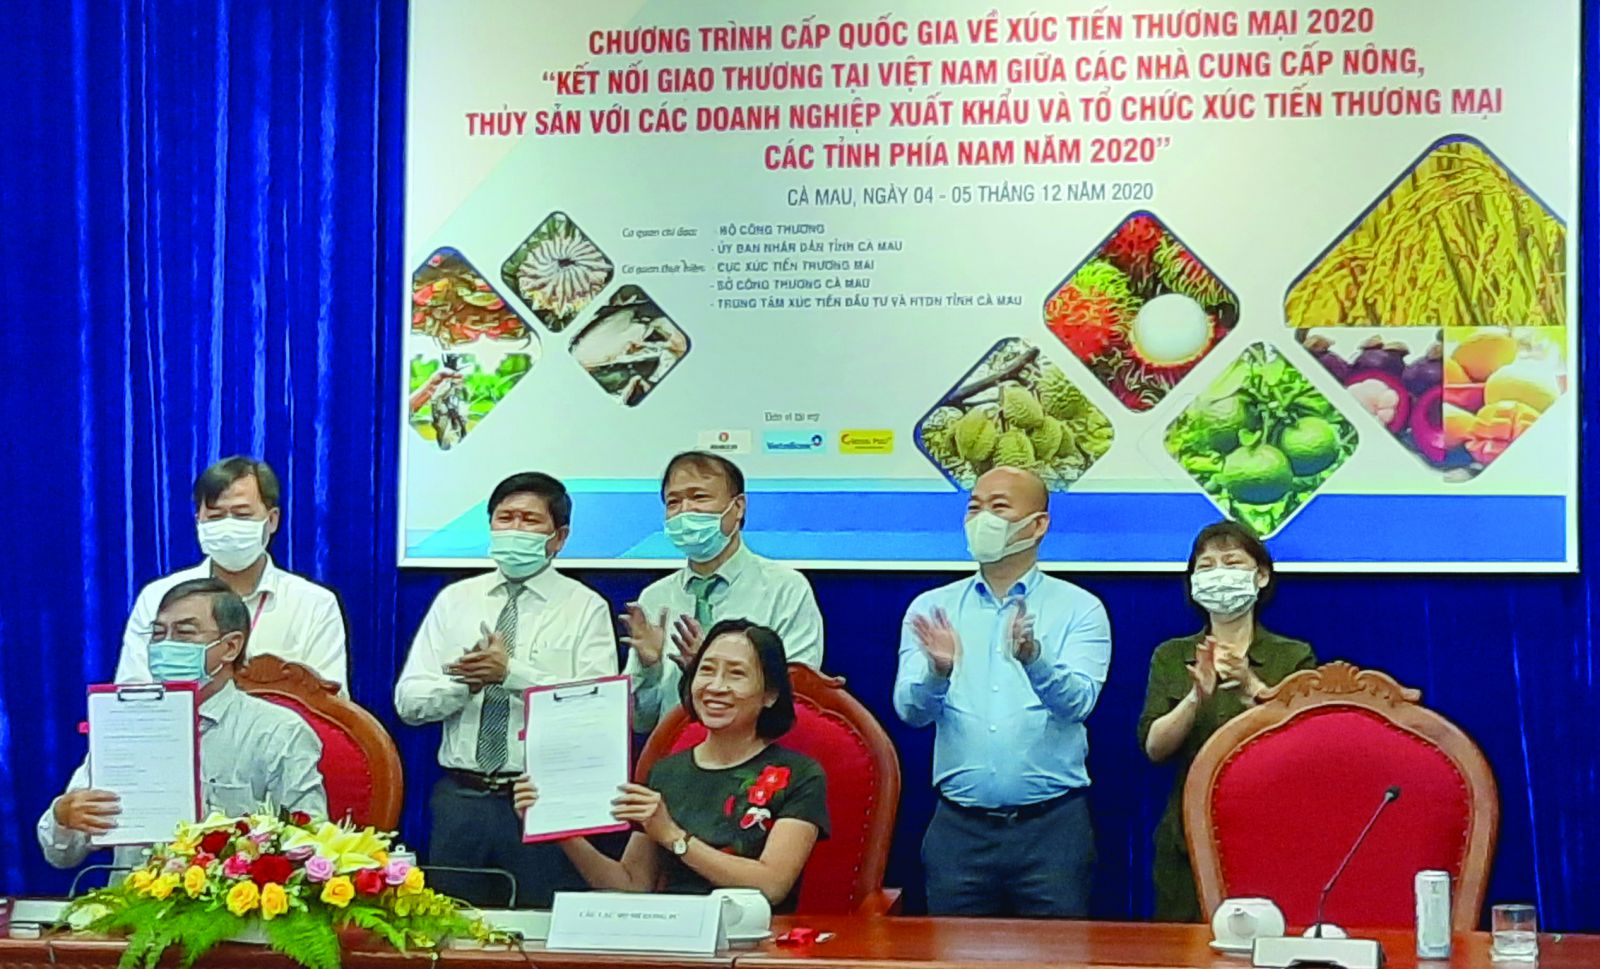  Trung tâm Xúc tiến đầu tư thương mại du lịch Kiên Giang ký kết với đối tác nước ngoài tại Hội nghị kết nối giao thương.